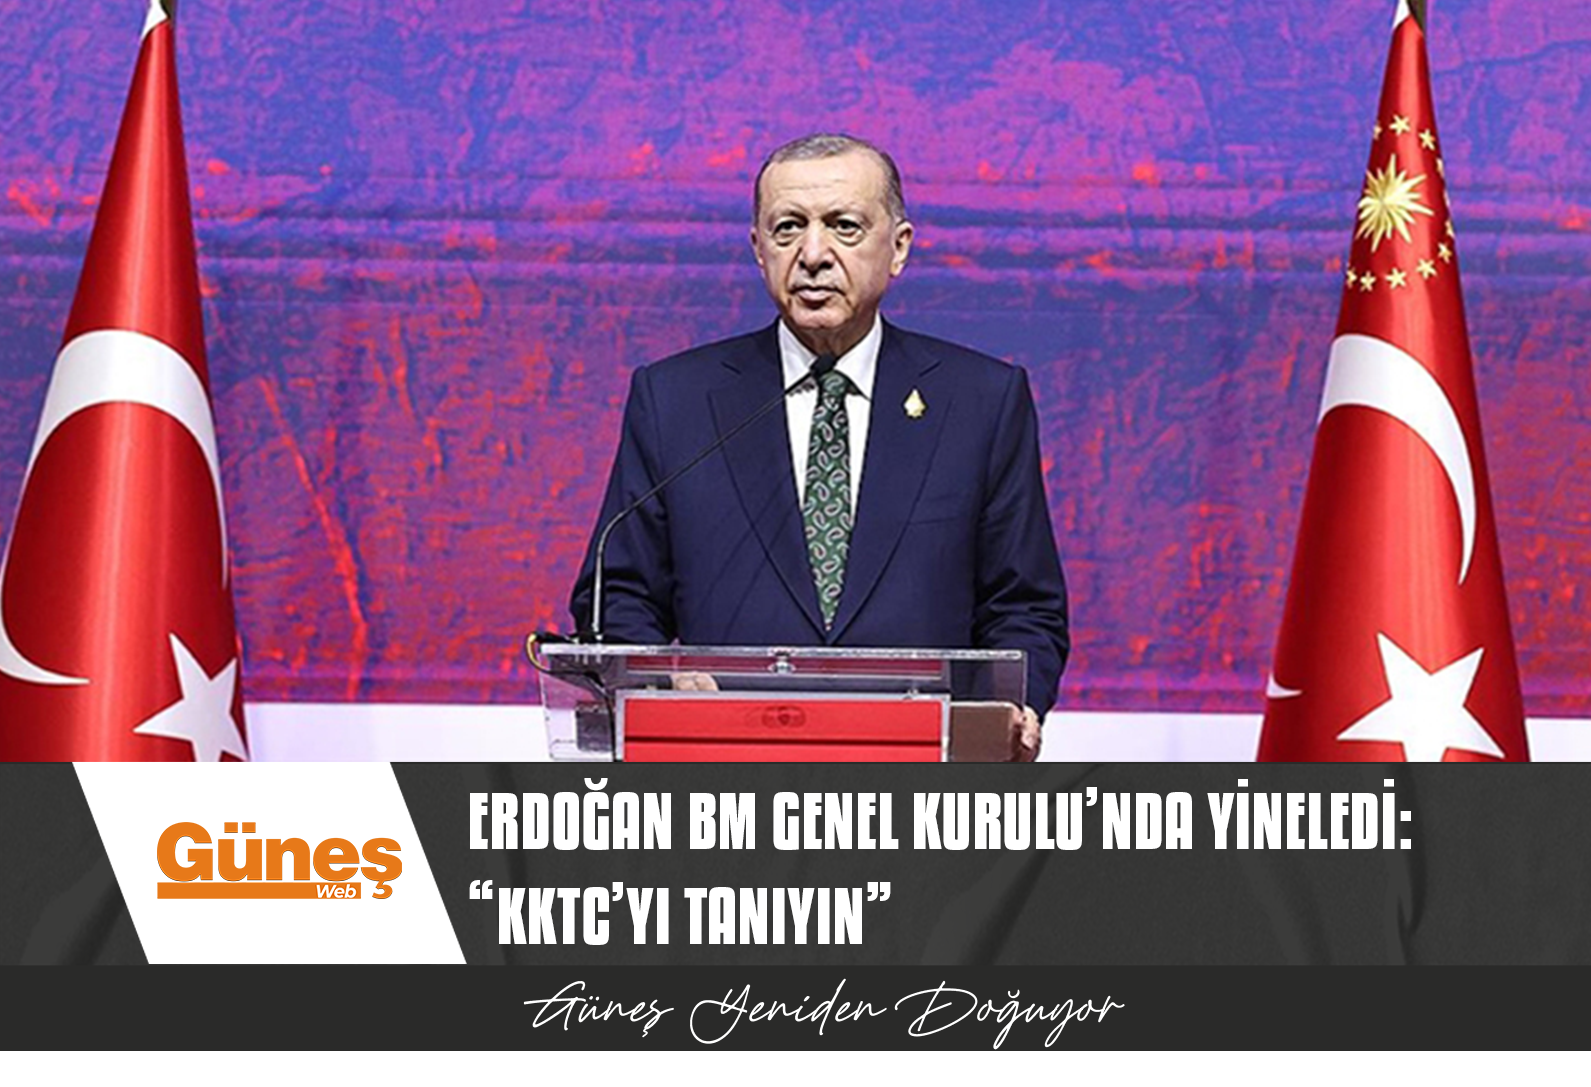 Erdoğan BM Genel Kurulu’nda yineledi:  “KKTC’yi tanıyın”